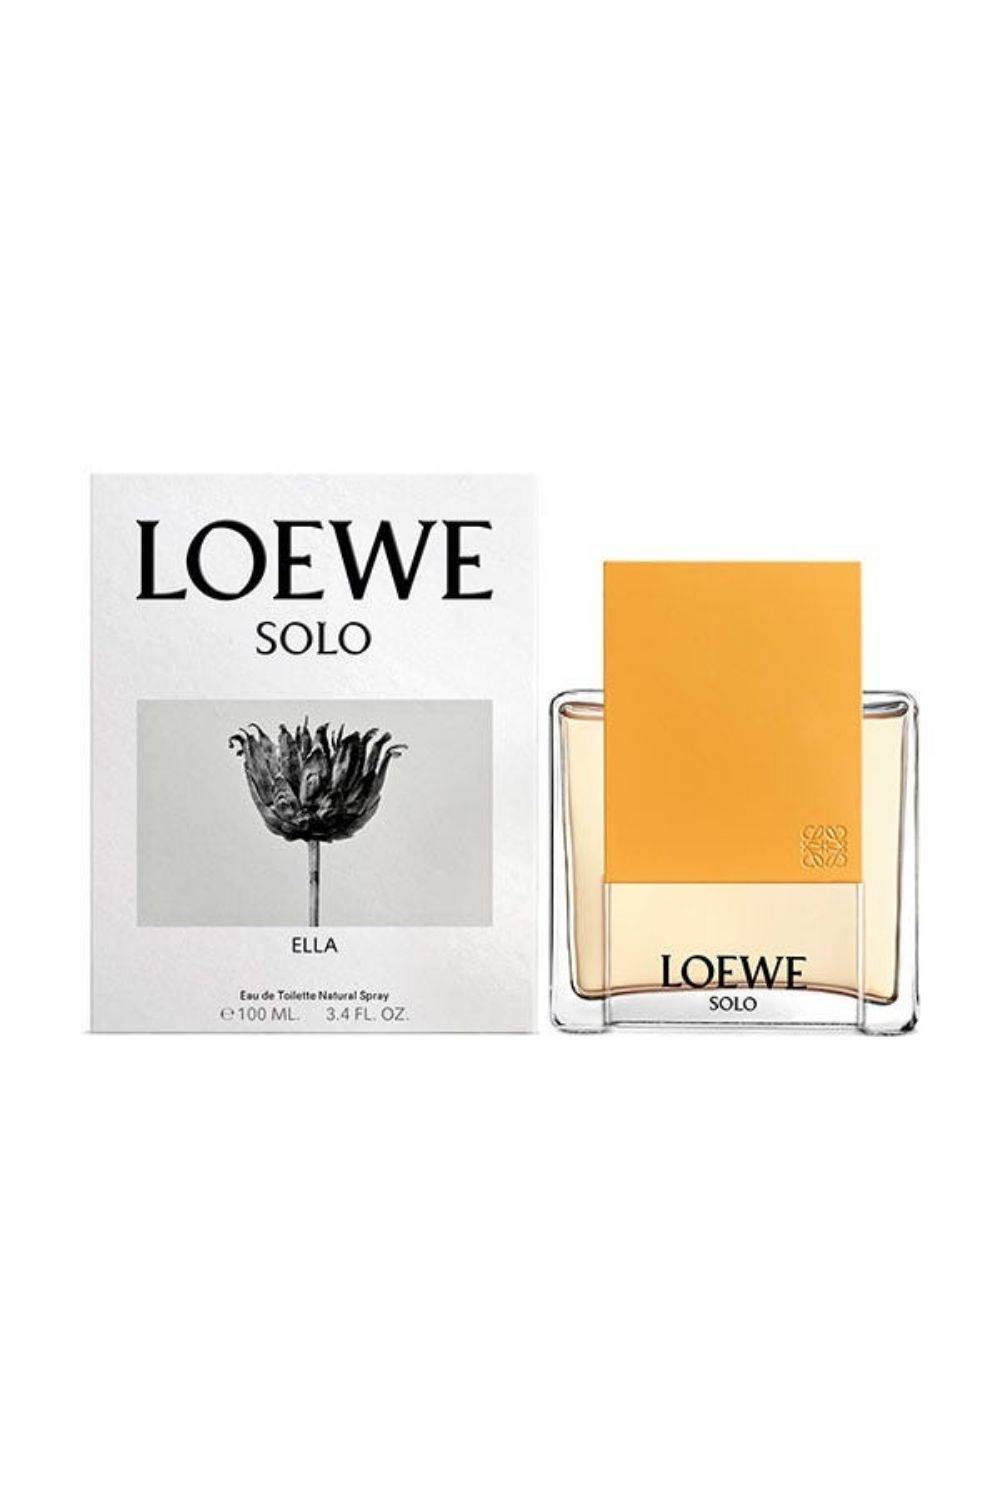 Perfumes que huelen a limpio: Solo Ella de Loewe